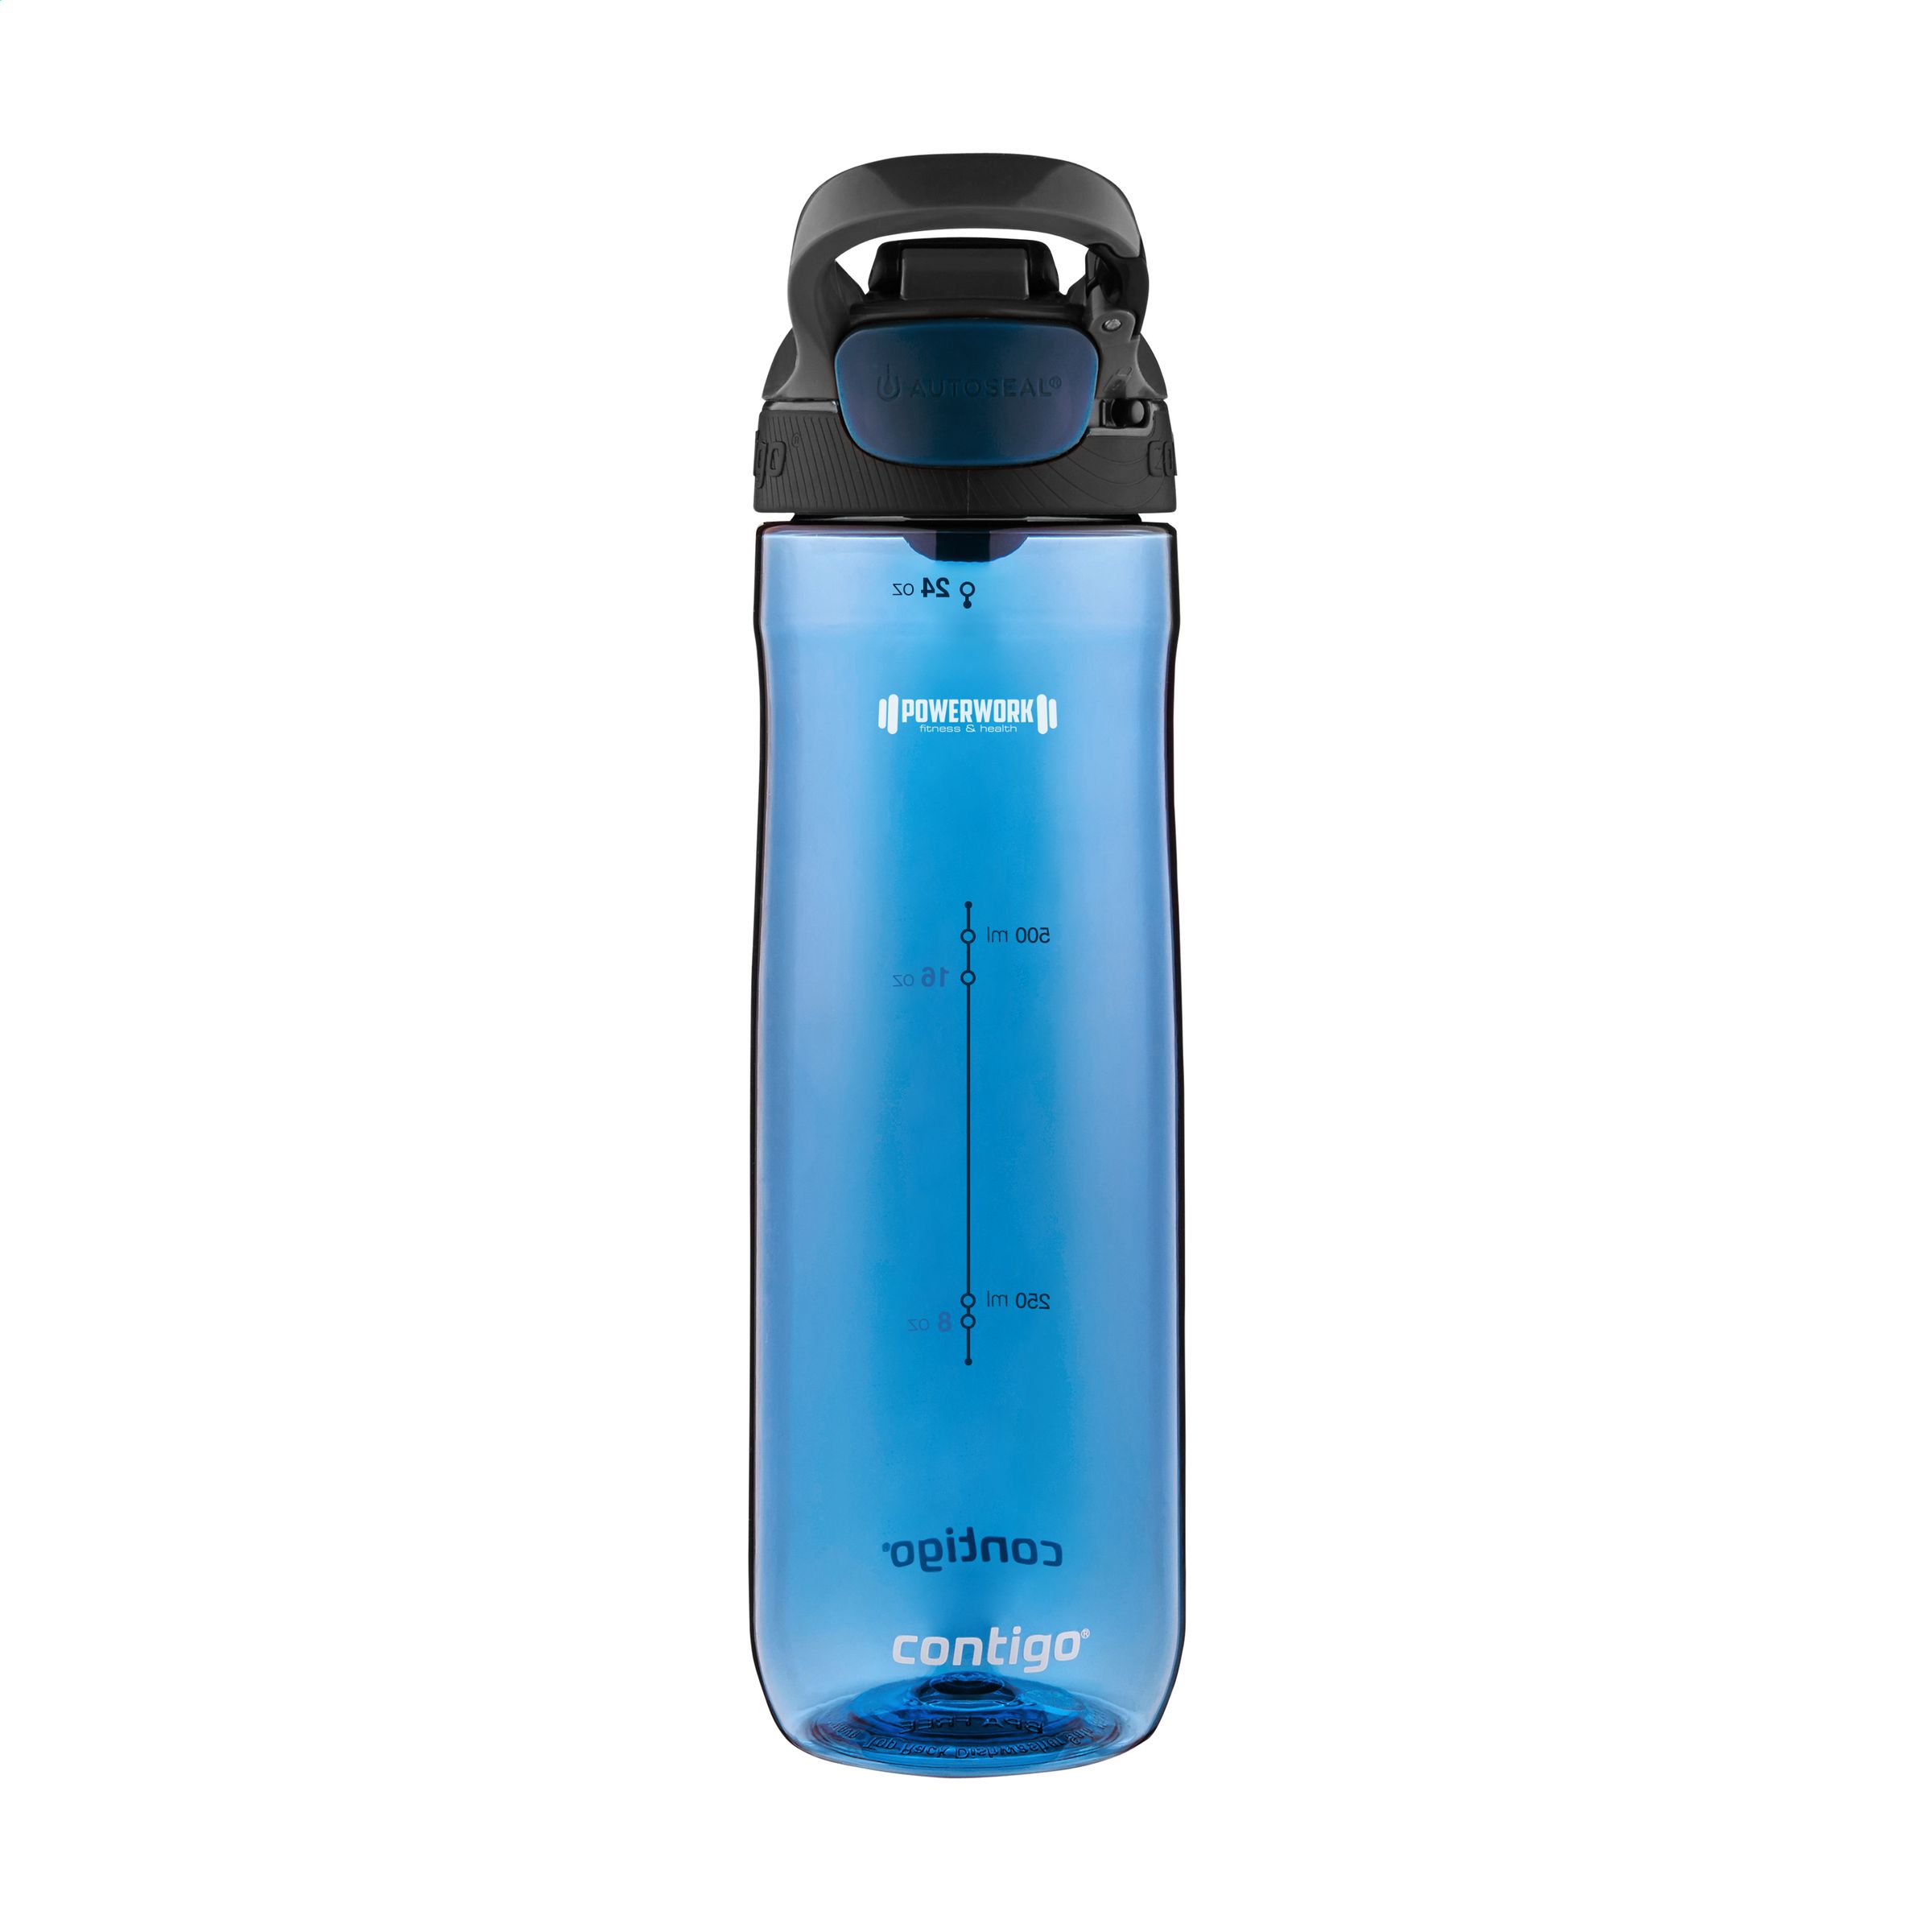 User-friendly water bottle - Rostherne - Lockerbie